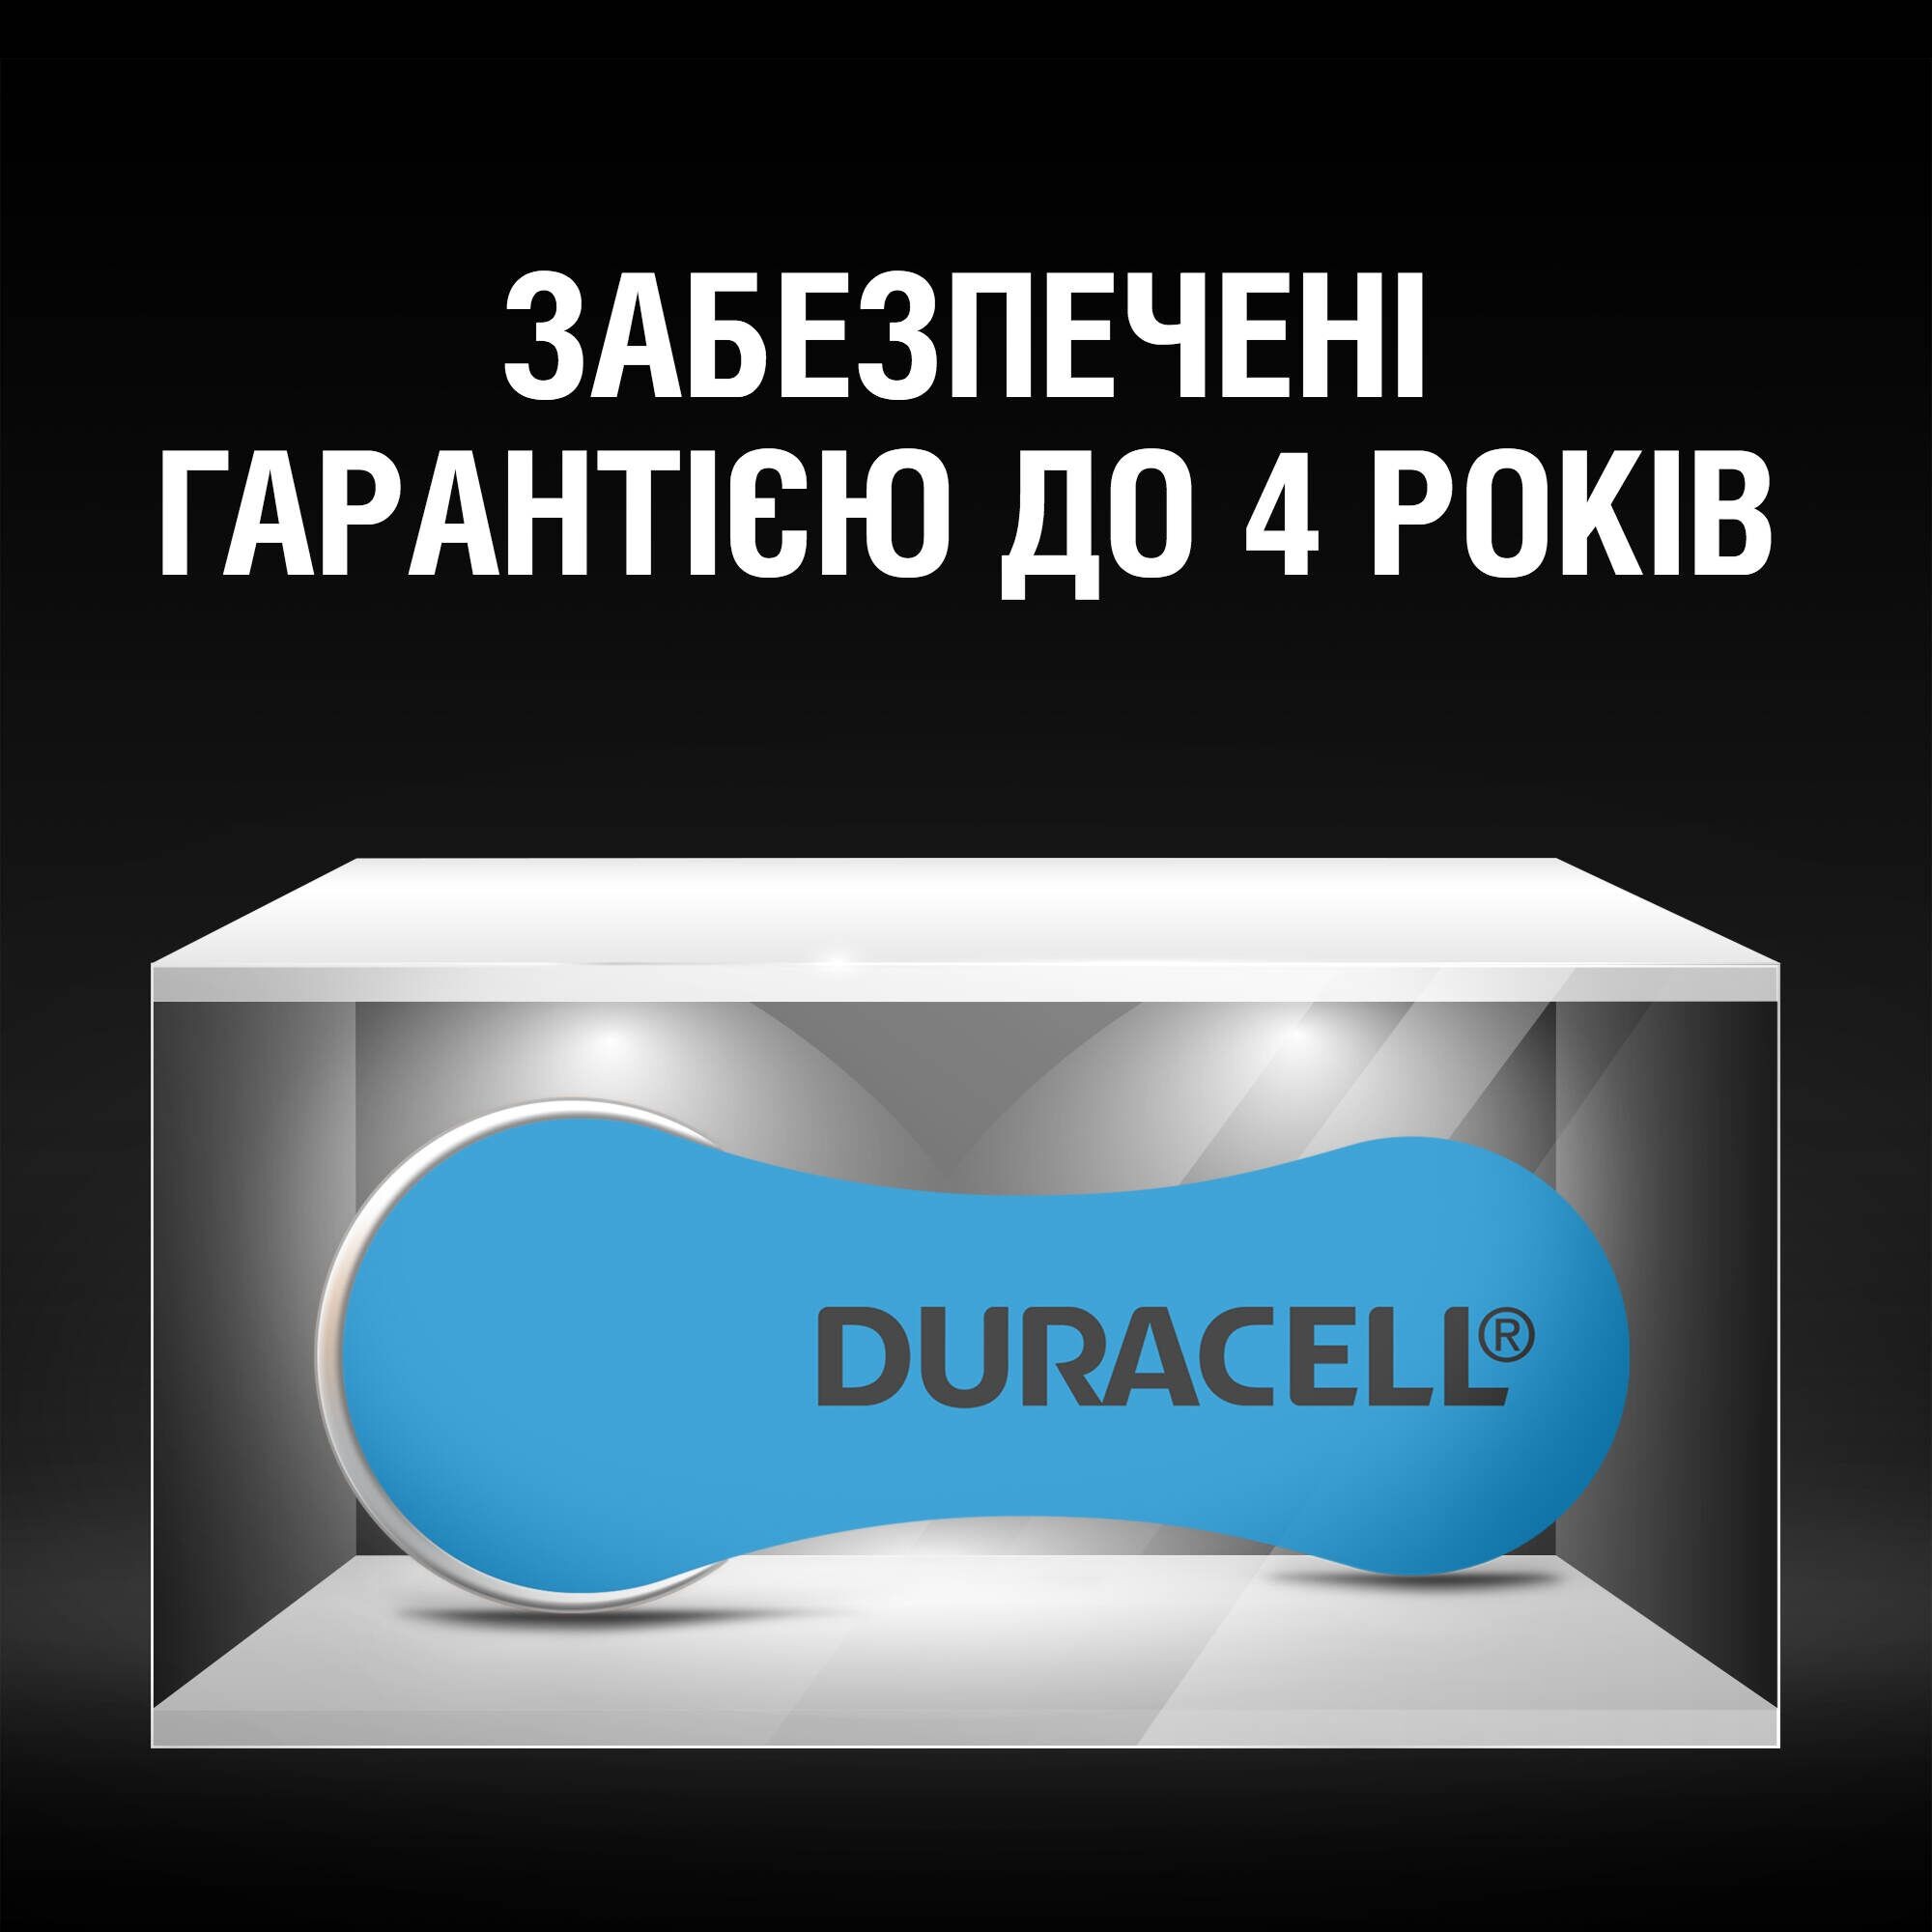 Батарейка Duracell HA 675 (96091470) обзор - фото 8